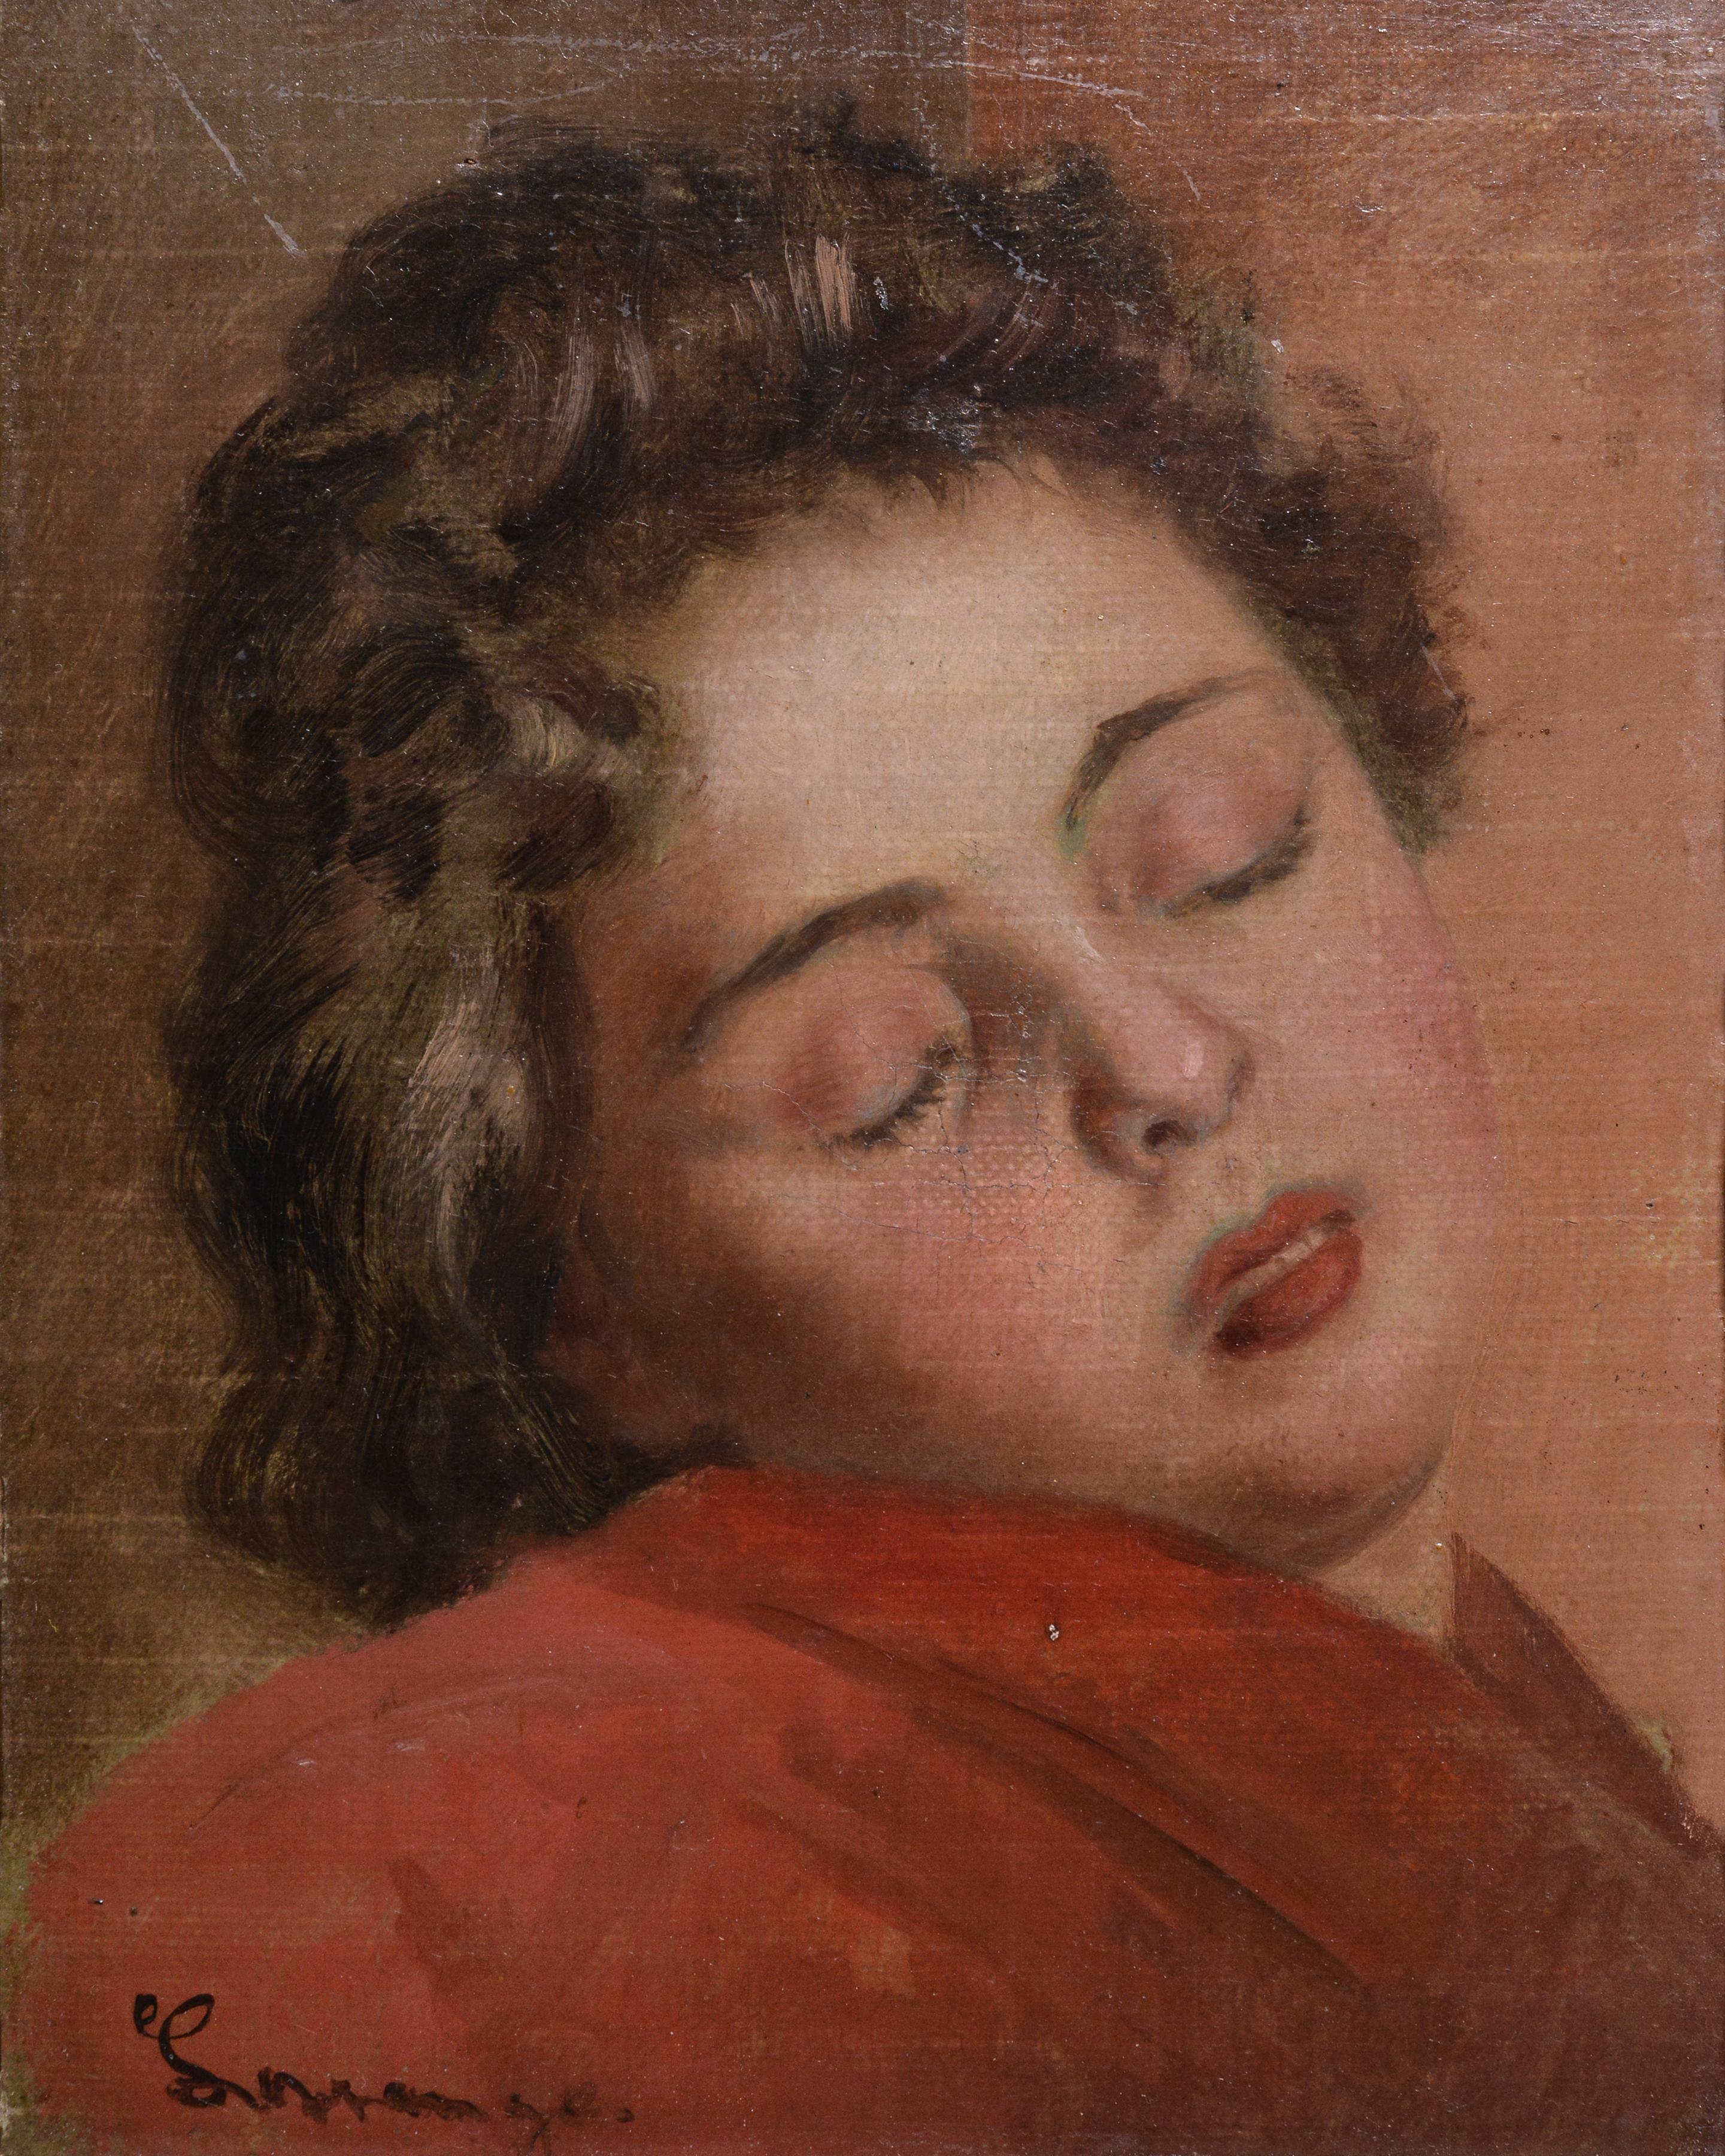 Portrait d'une jeune fille endormie par un maître peintre de genre allemand danois 19ème siècle - Painting de Johann August Frederik Carl‏ Lorange